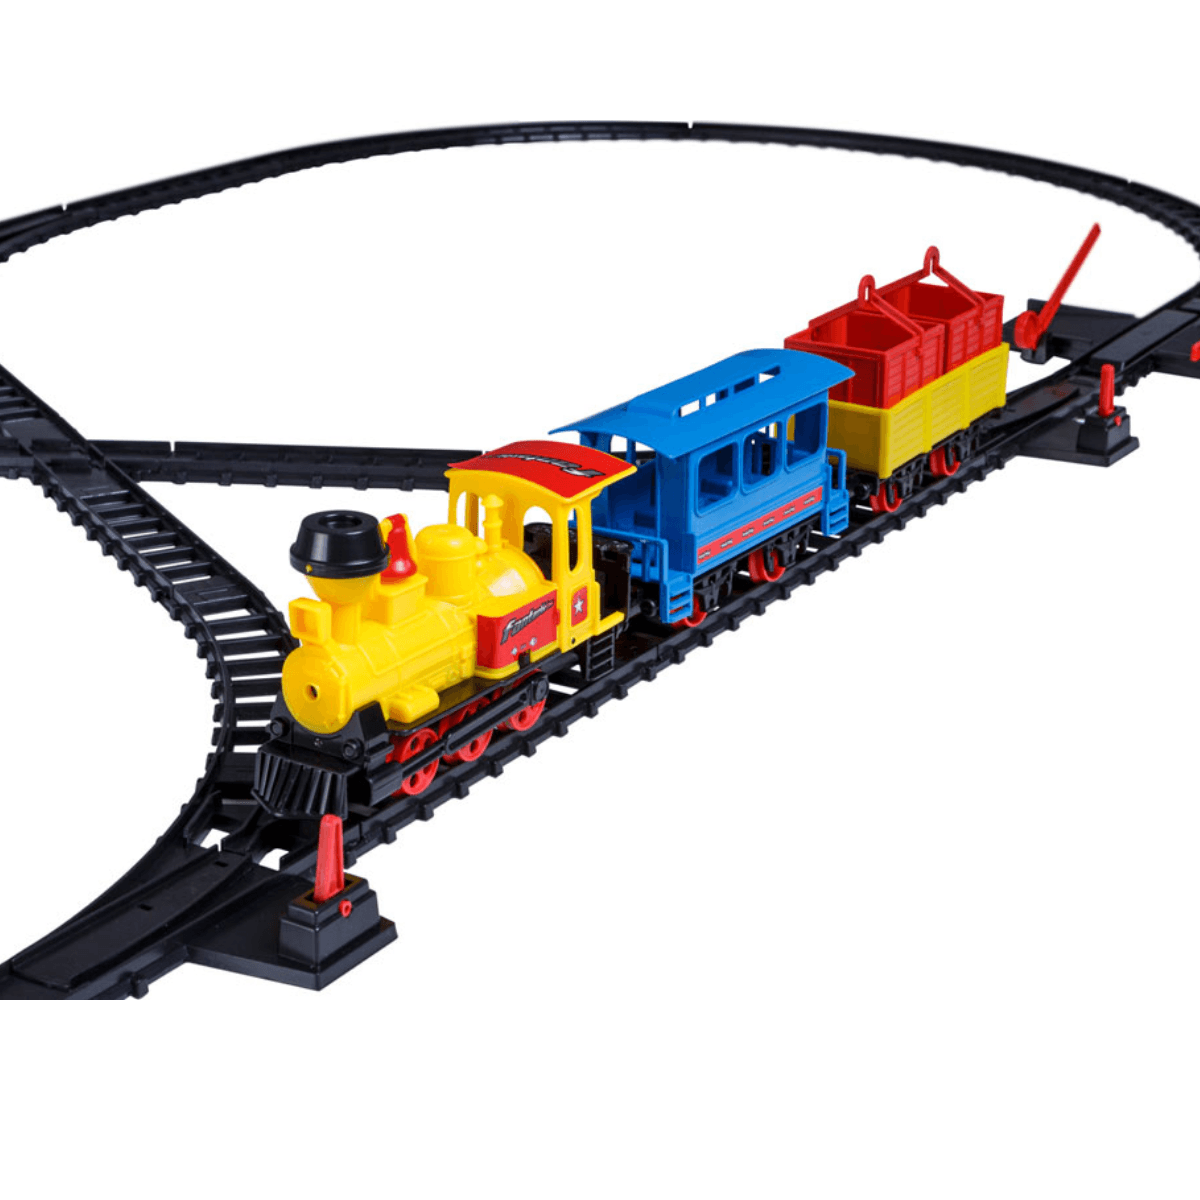 Trem Brinquedo Feliz Com Duas Trilhas Ilustração por ©tatty77tatty  #271559210